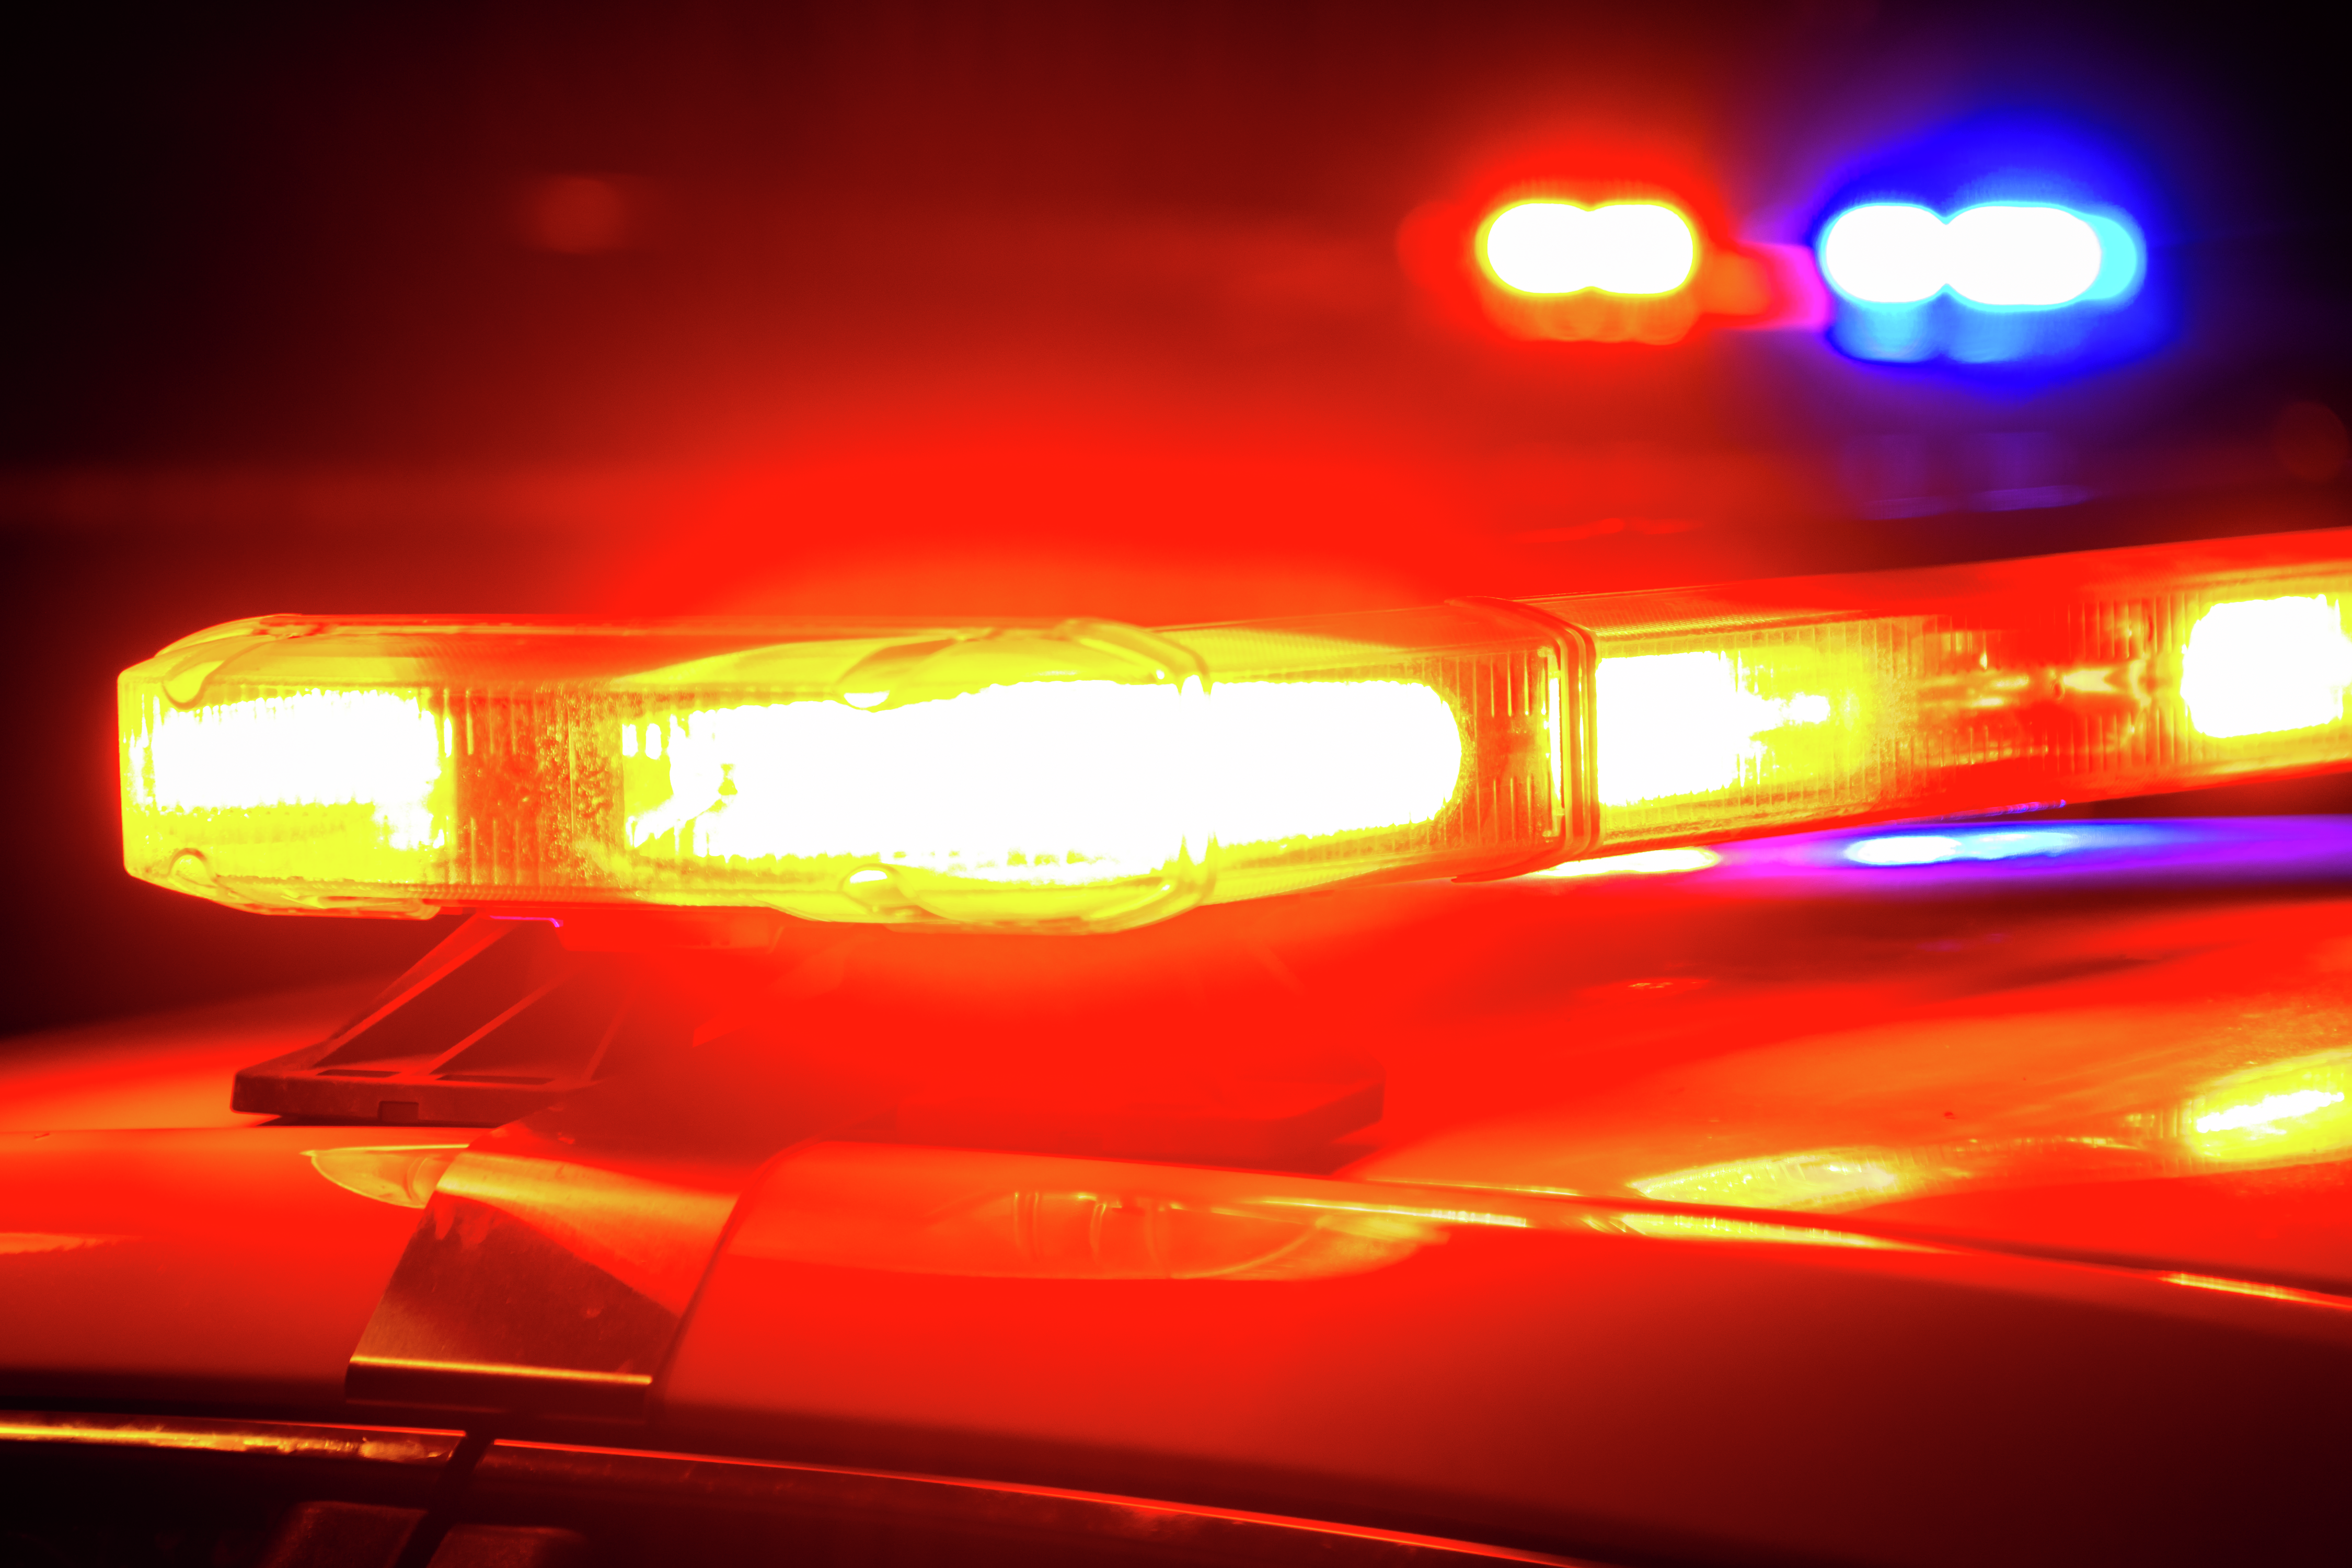 BREAKING: Off-duty Cook County Sheriff's deputy killed in shootout